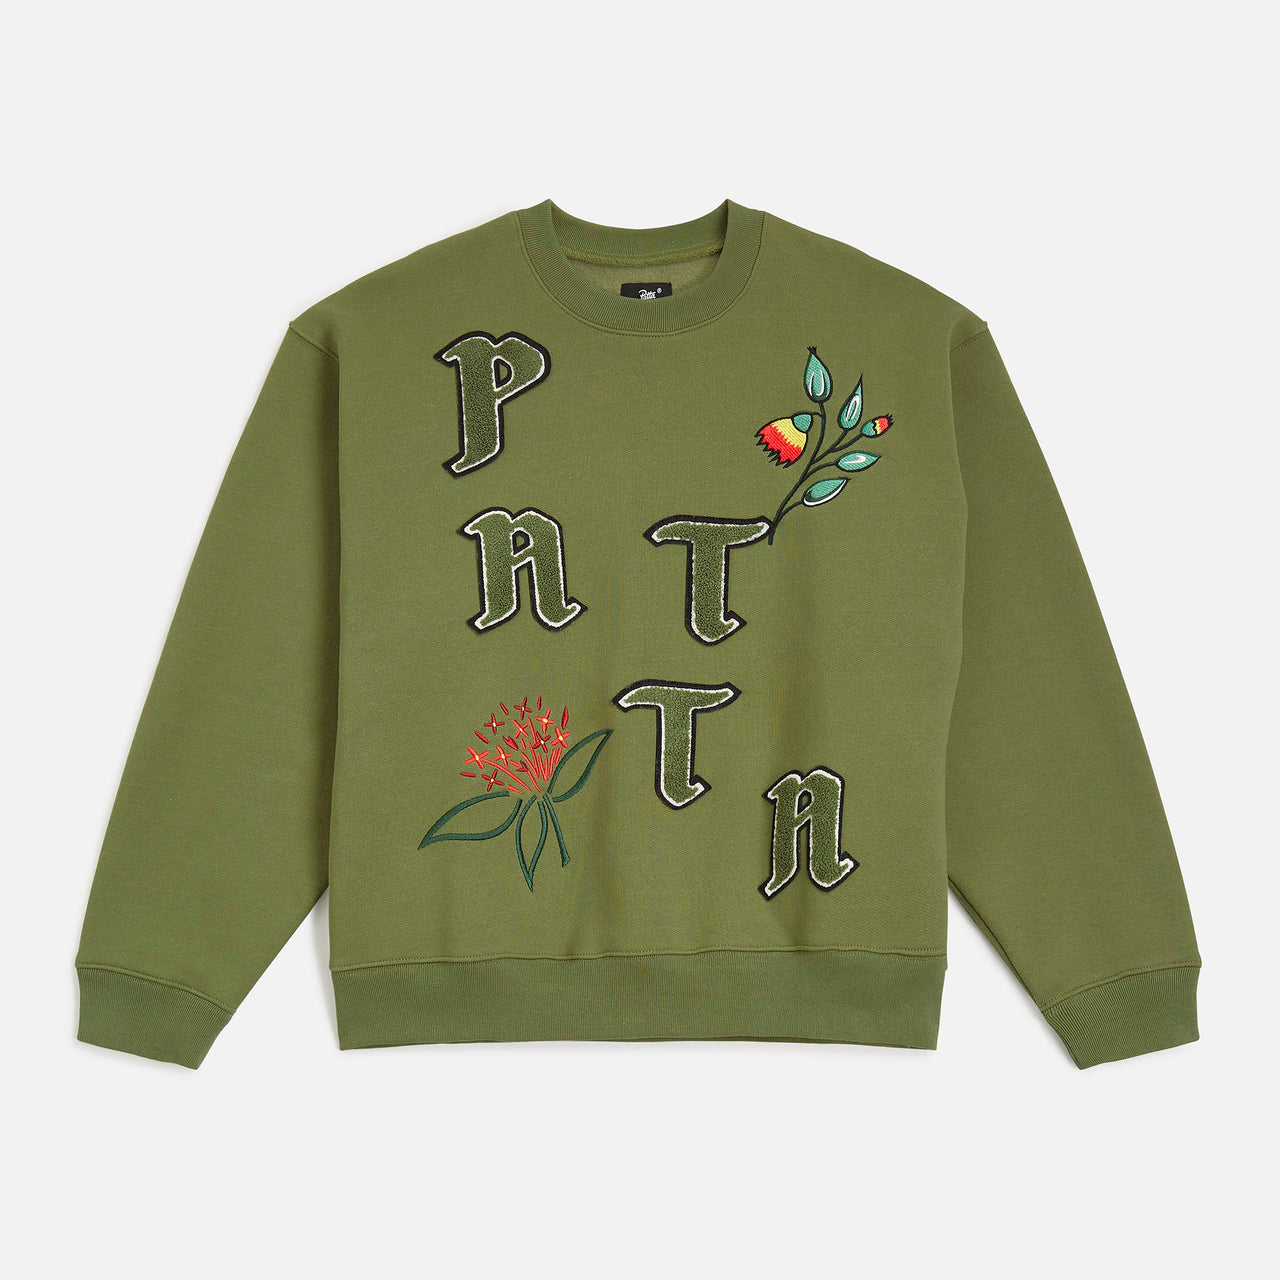 Patta Flowers Crewneck Sweater - Loden Green